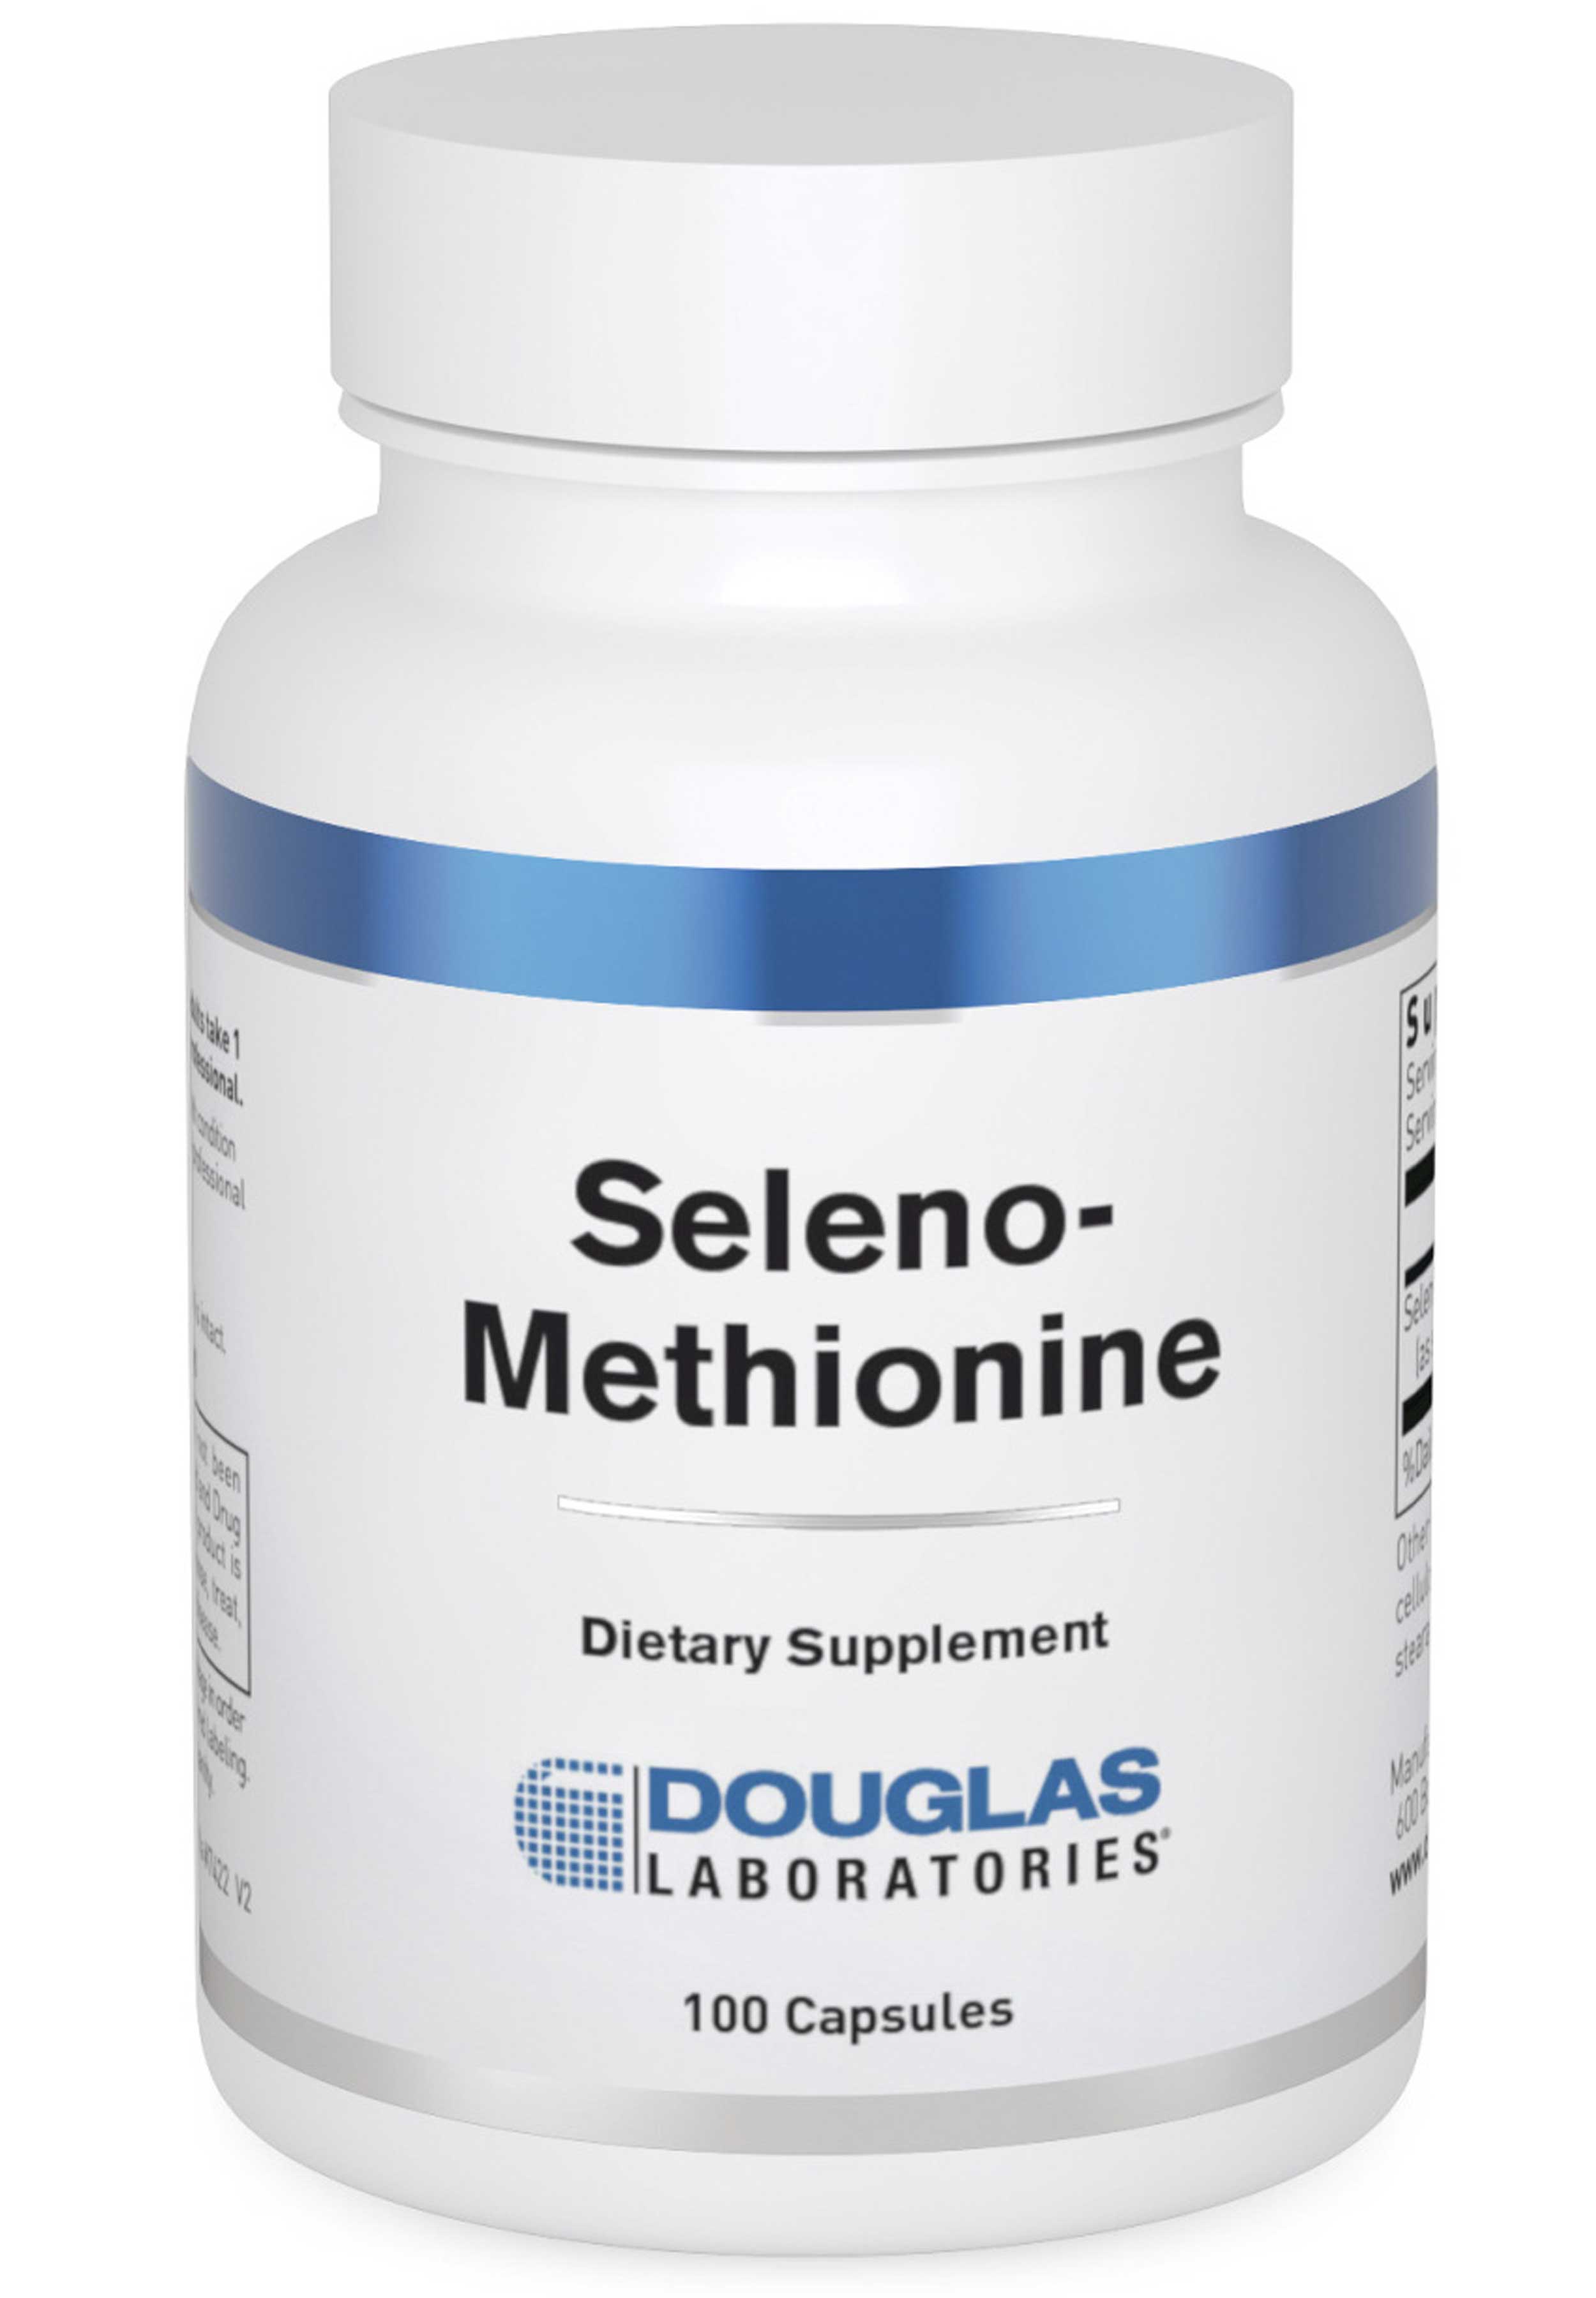 Douglas Laboratories Seleno-Methionine